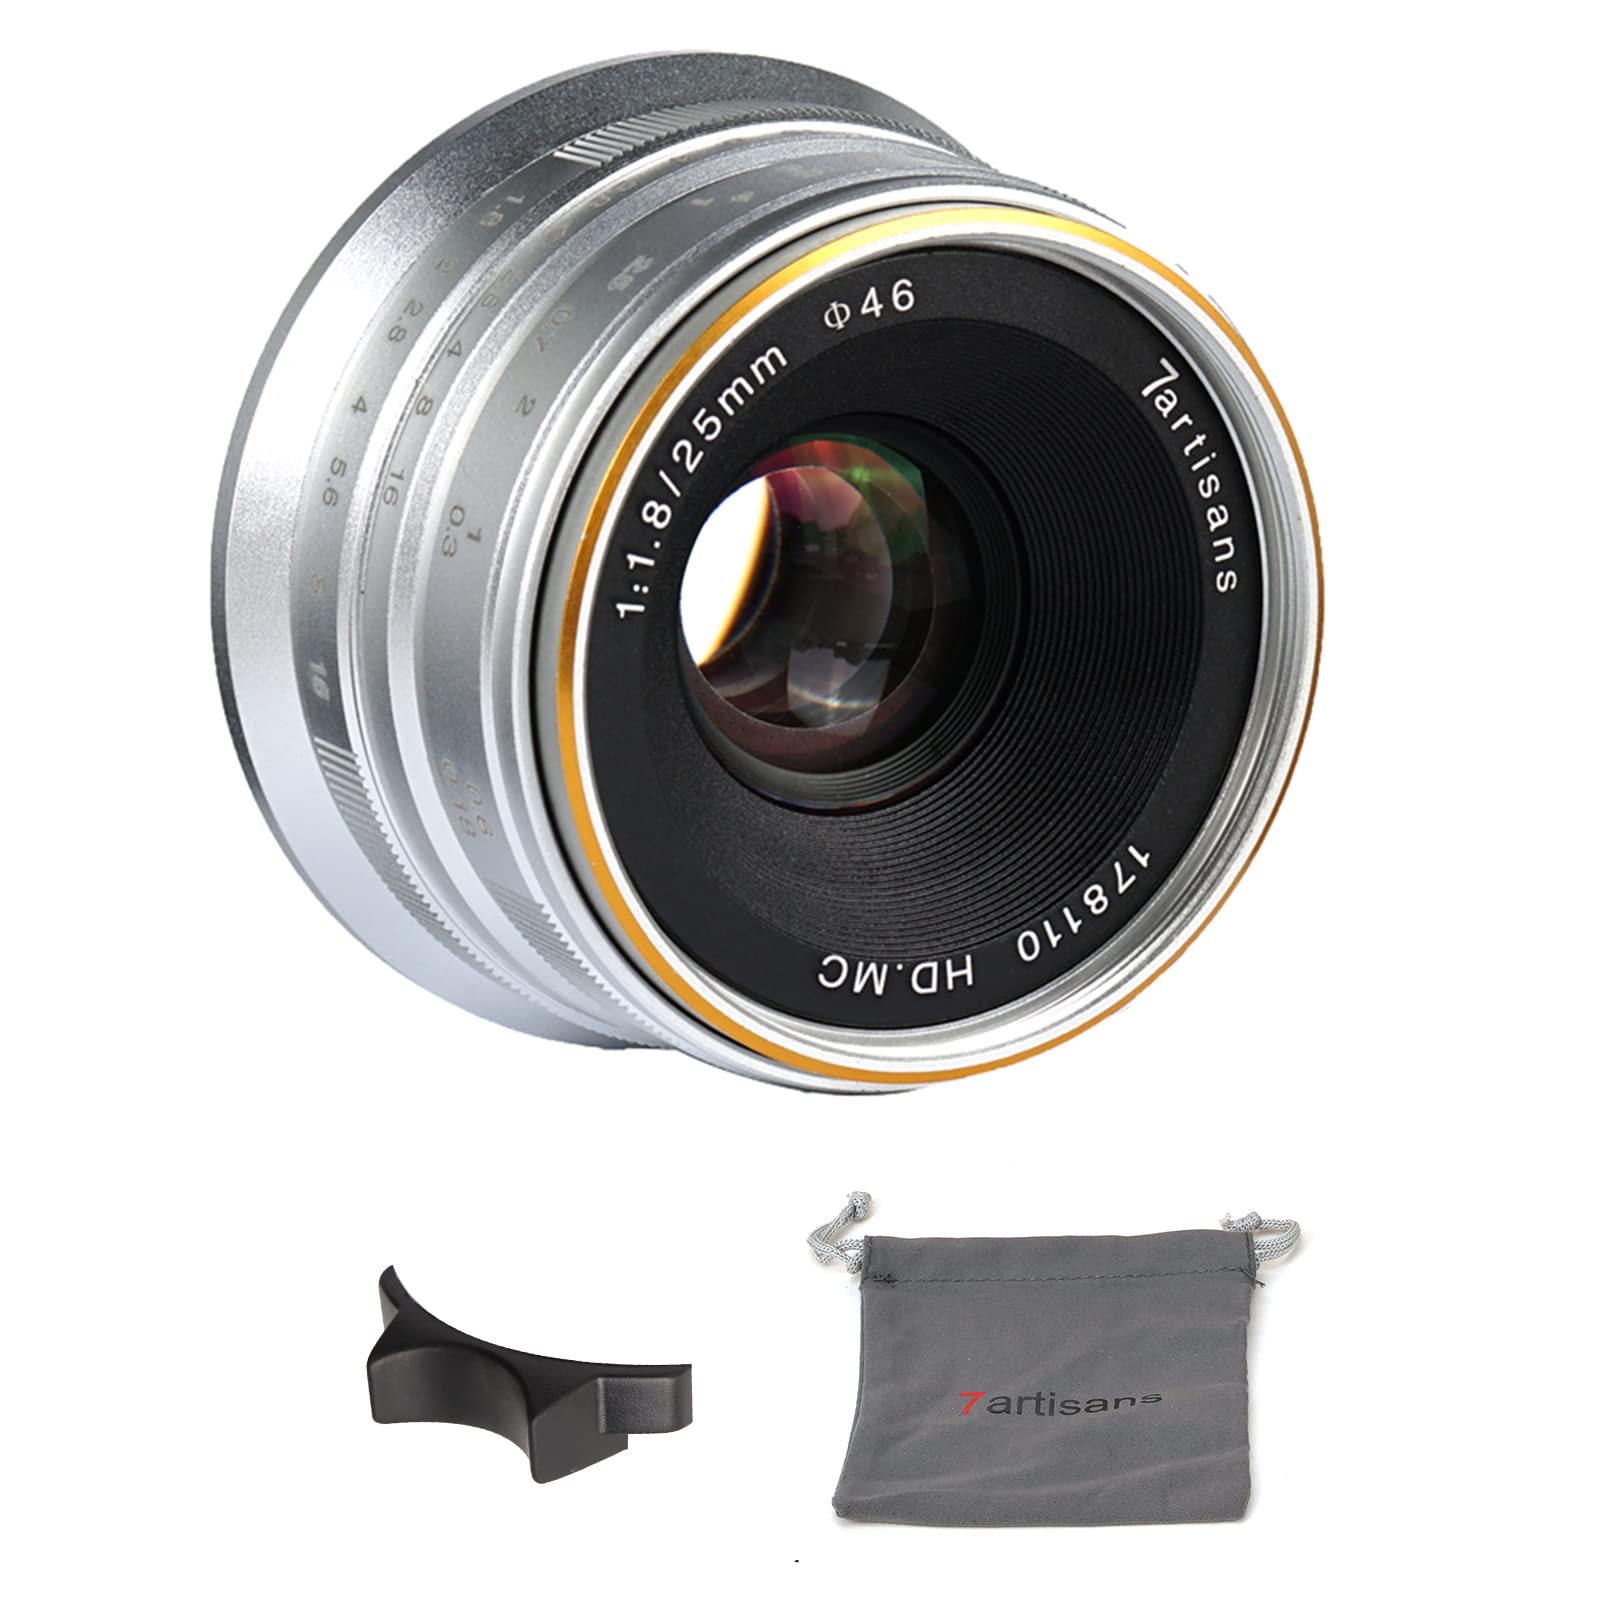 7artisans 25mm f1,8 Weitwinkelobjektiv für spiegellose M4/3 Panasonic and Olympus Kameras